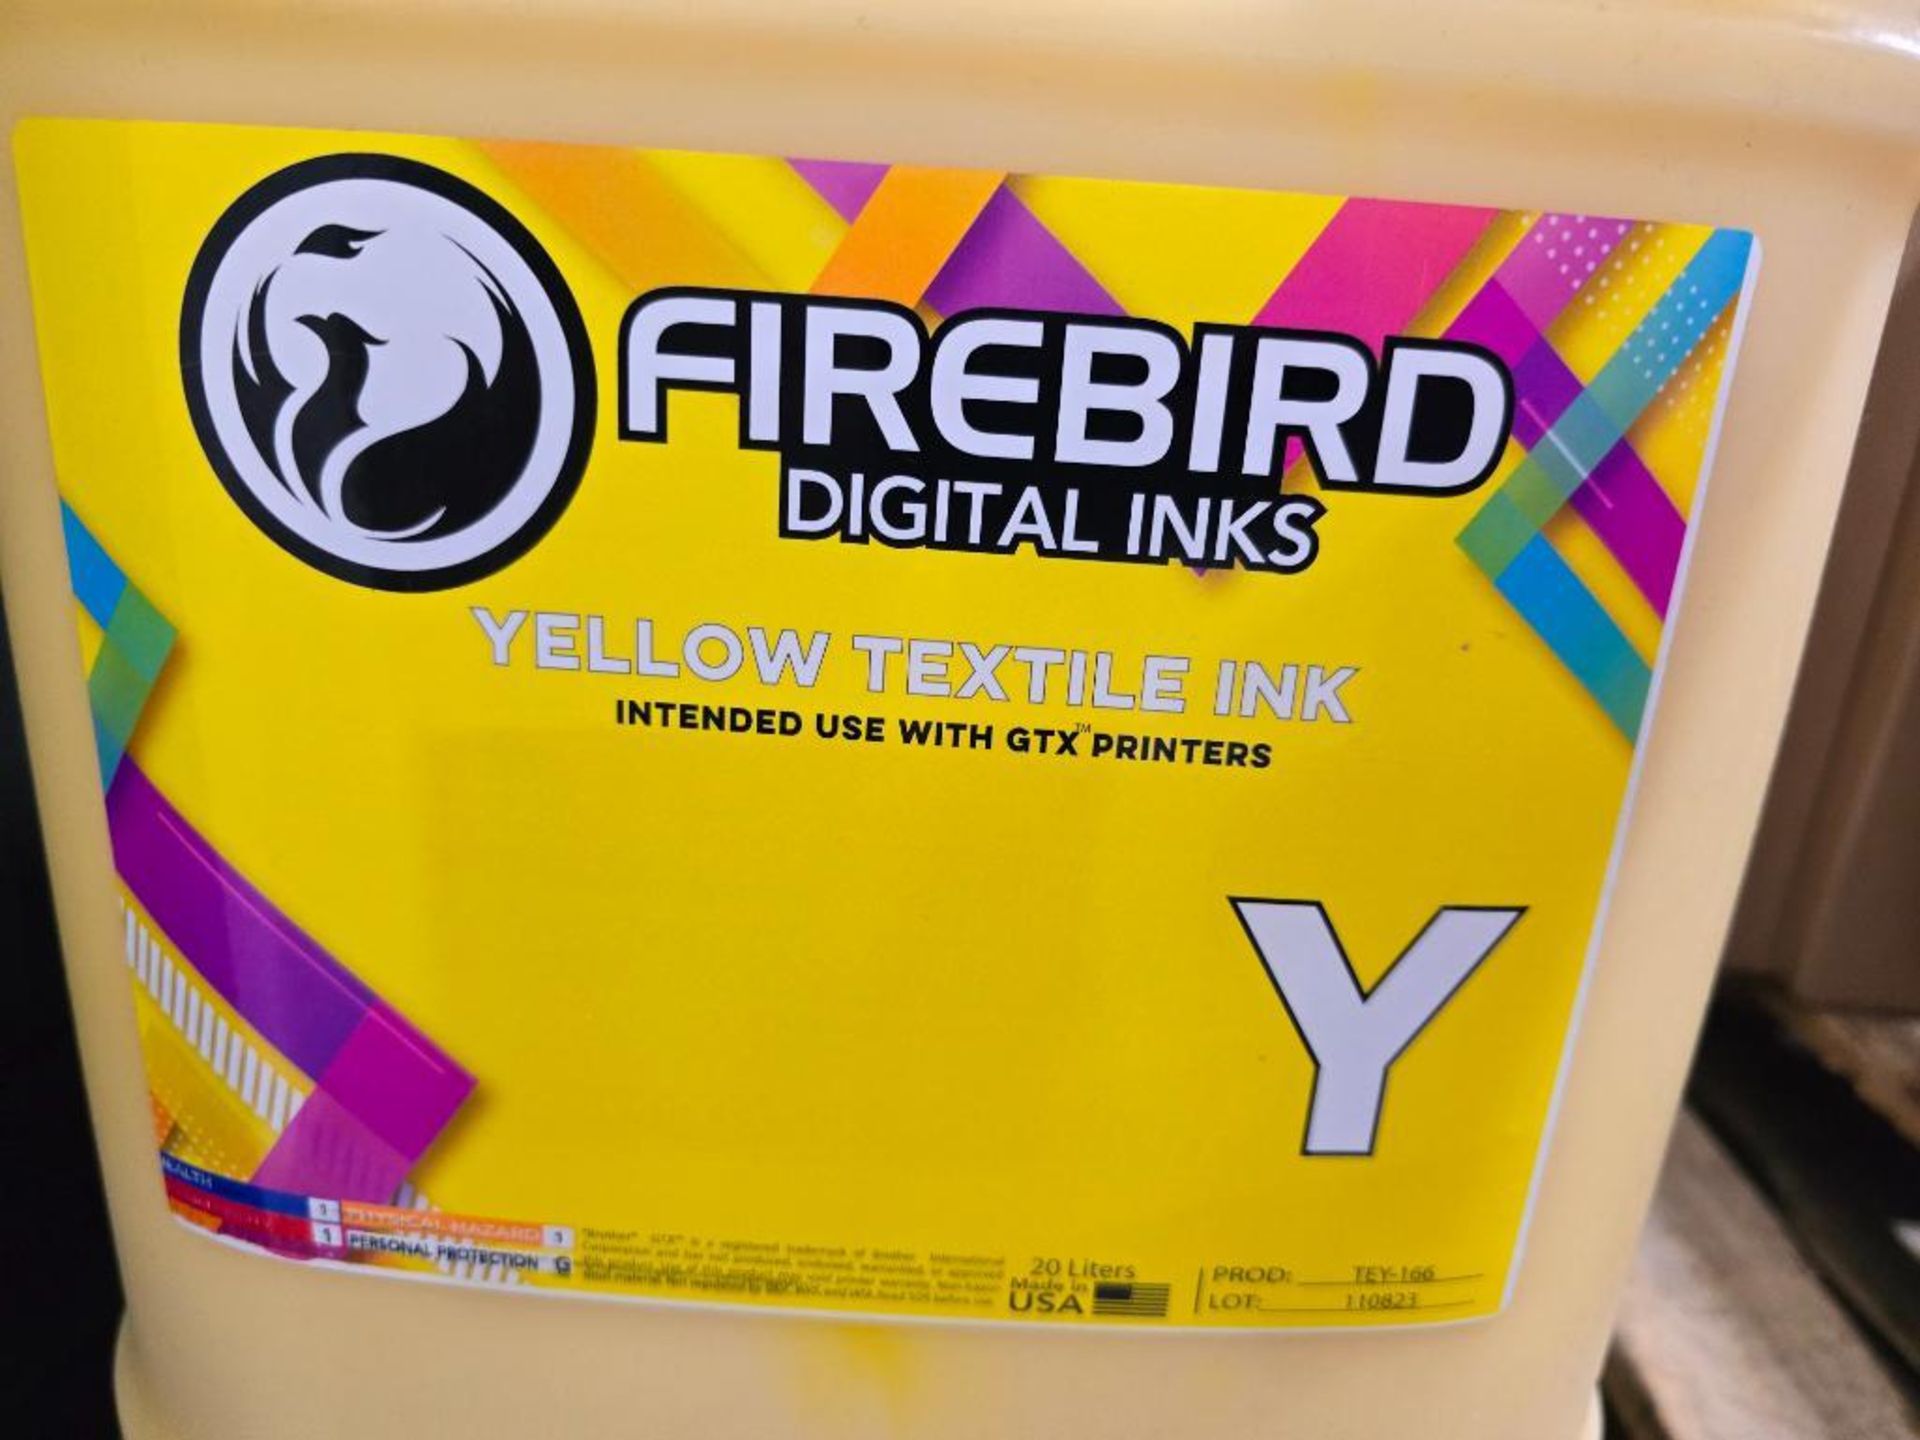 Firebird Yellow Textile Ink, 20-Liter Container, Product: TEY-166 - Bild 3 aus 3